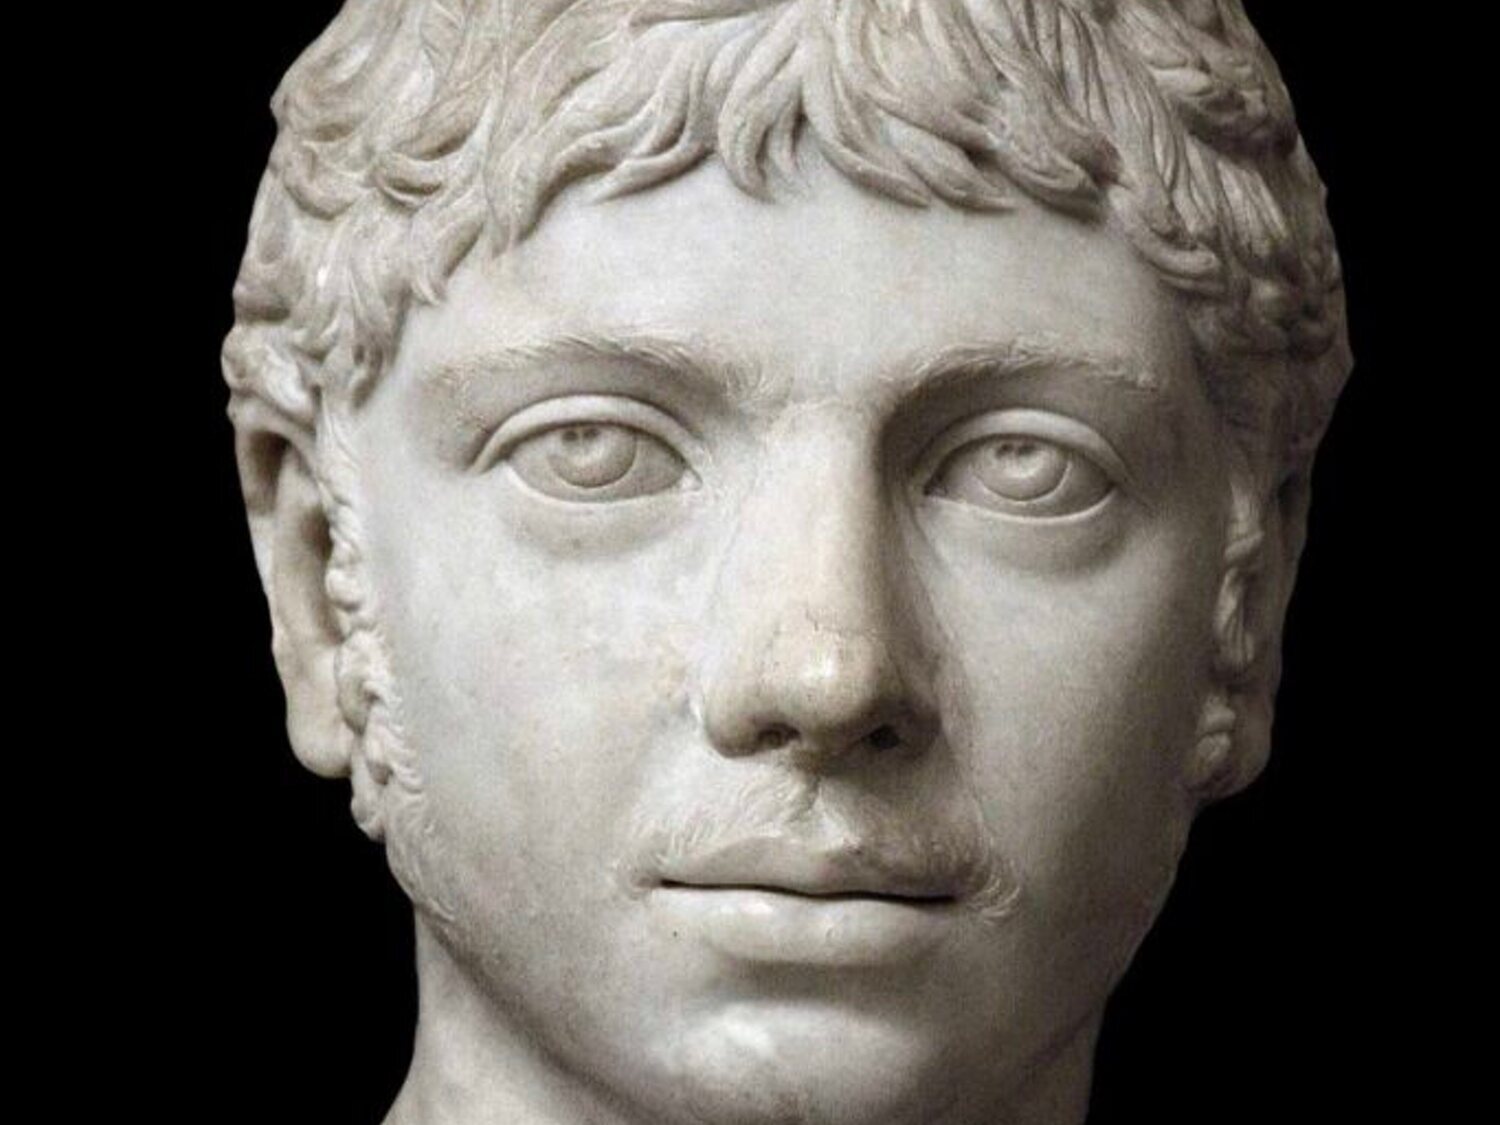 La historia de Heliogábalo, emperador romano reconocido como mujer trans